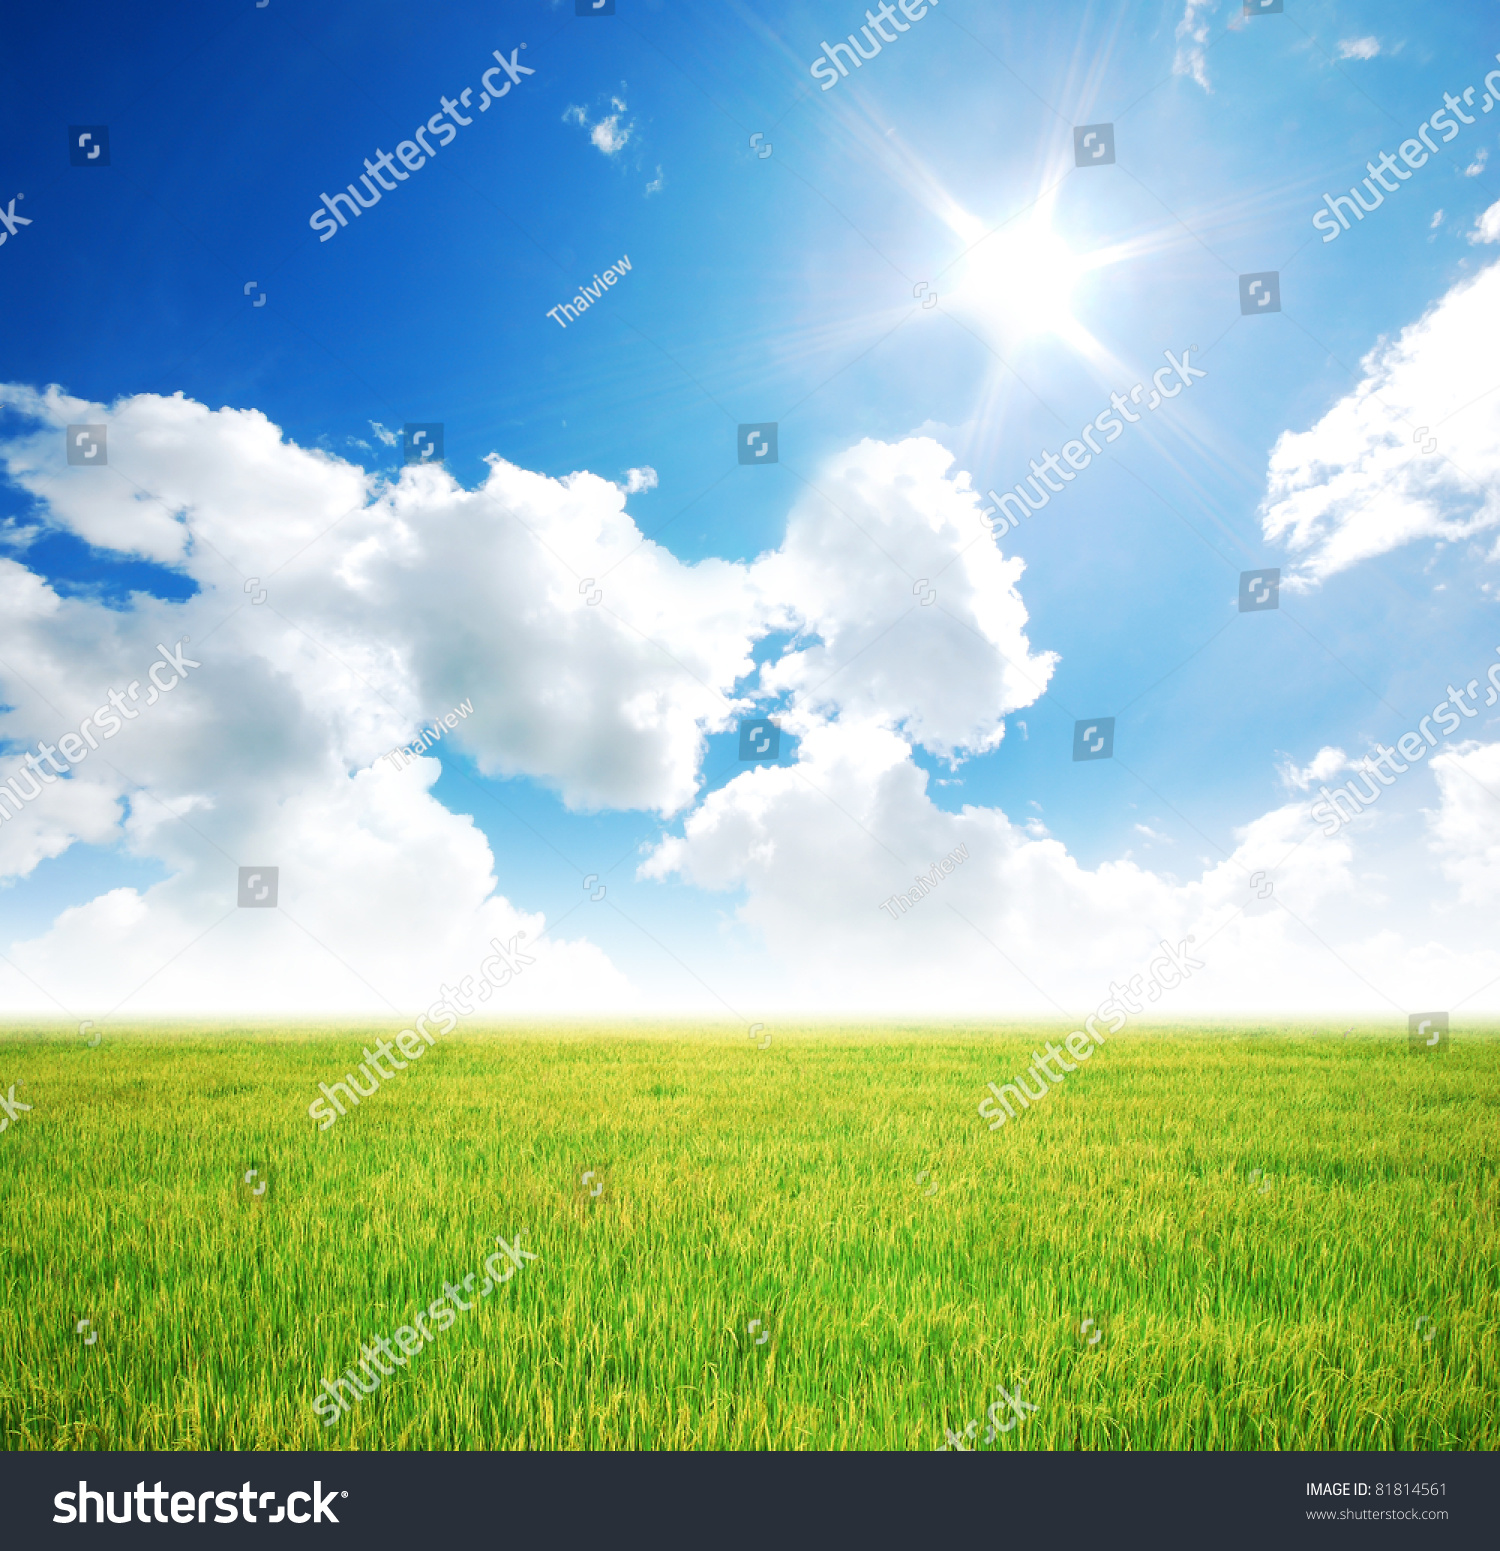 Rice Field Green Grass Blue Sky Stock Photo 81814561 - Shutterstock